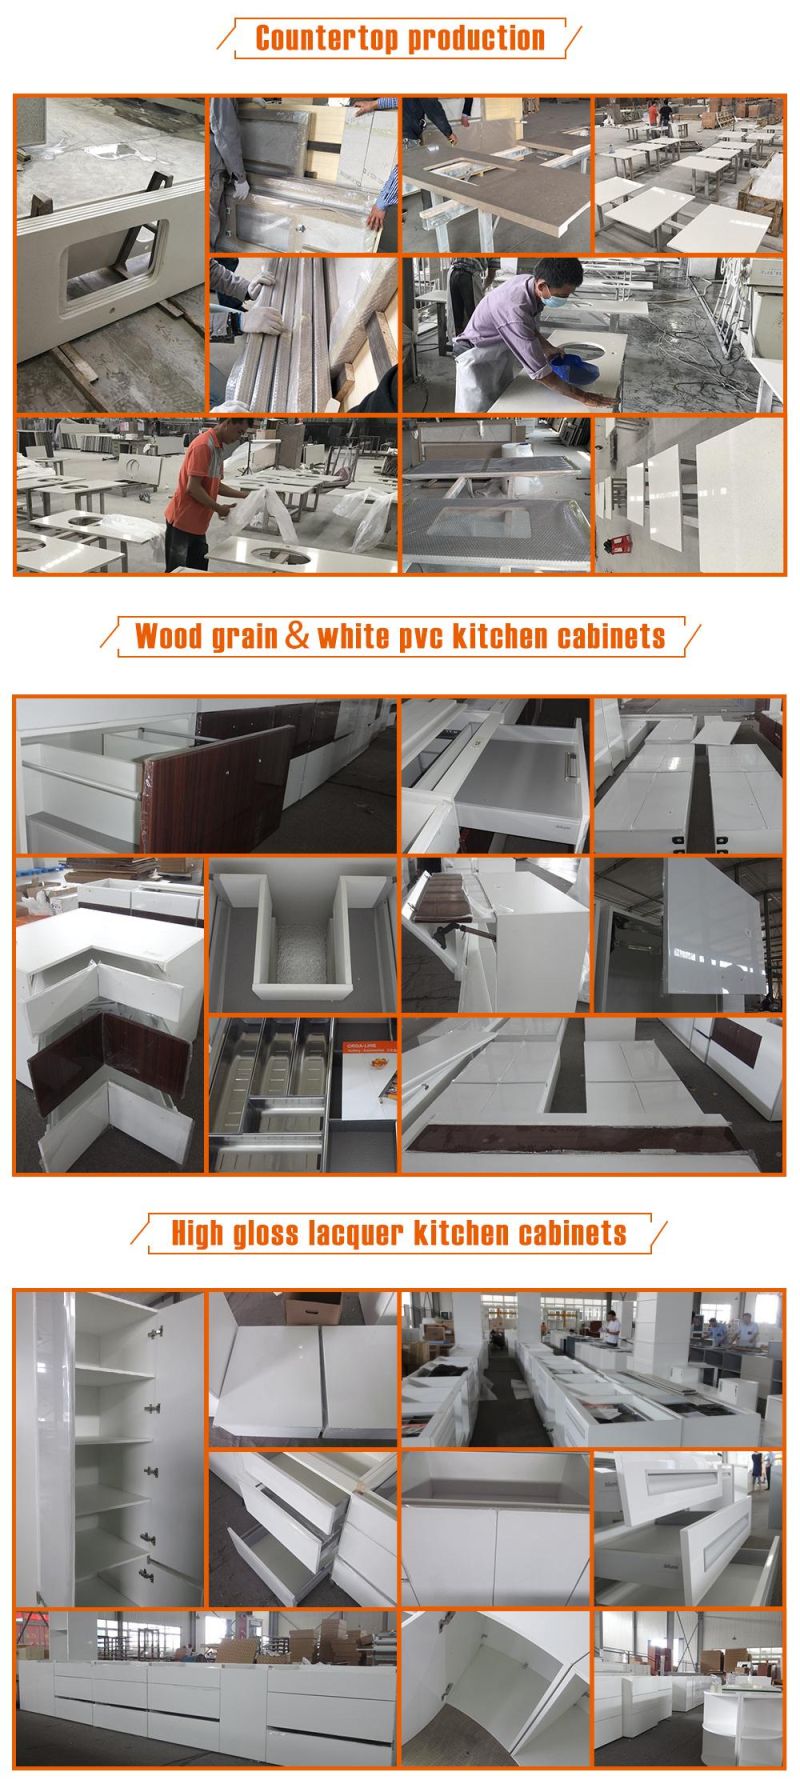 European Style White PVC Kitchen Cabinet with Durable Quartz Stone Countertop